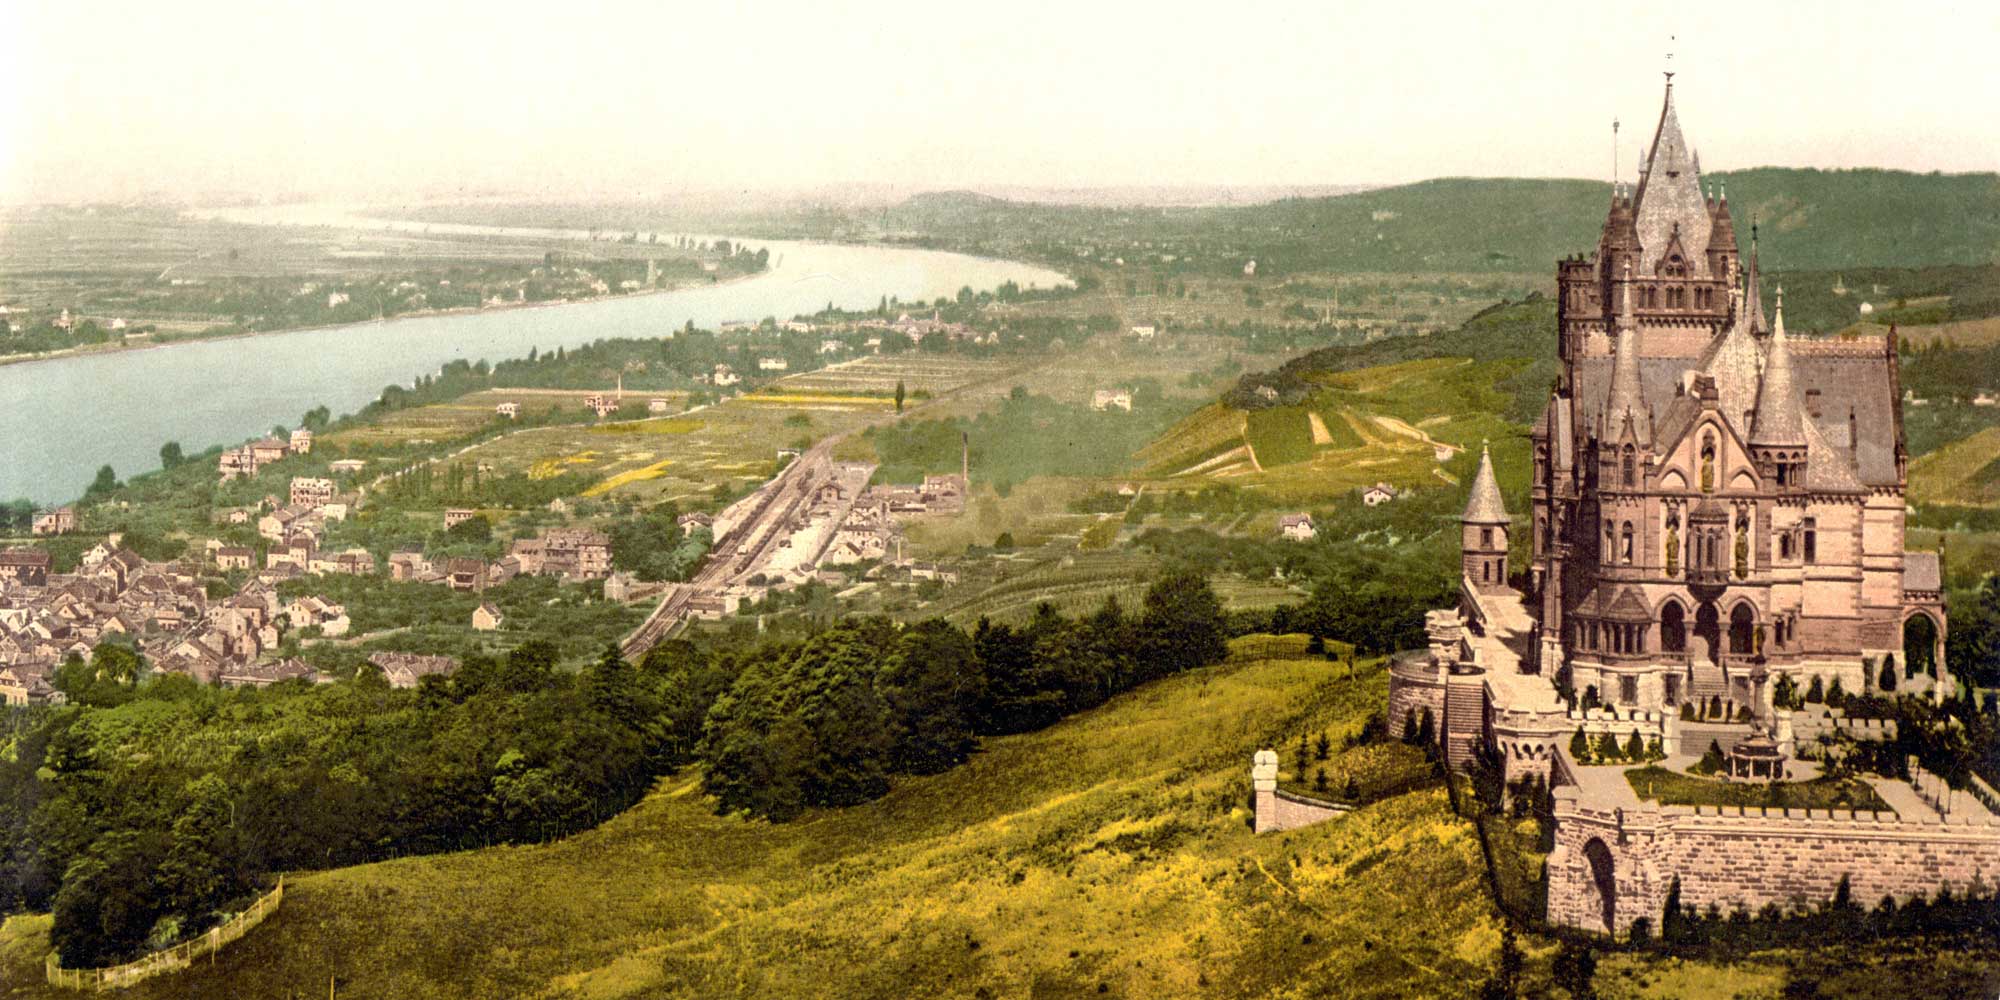 1903 – Schloss Drachenburg as a Summer Resort